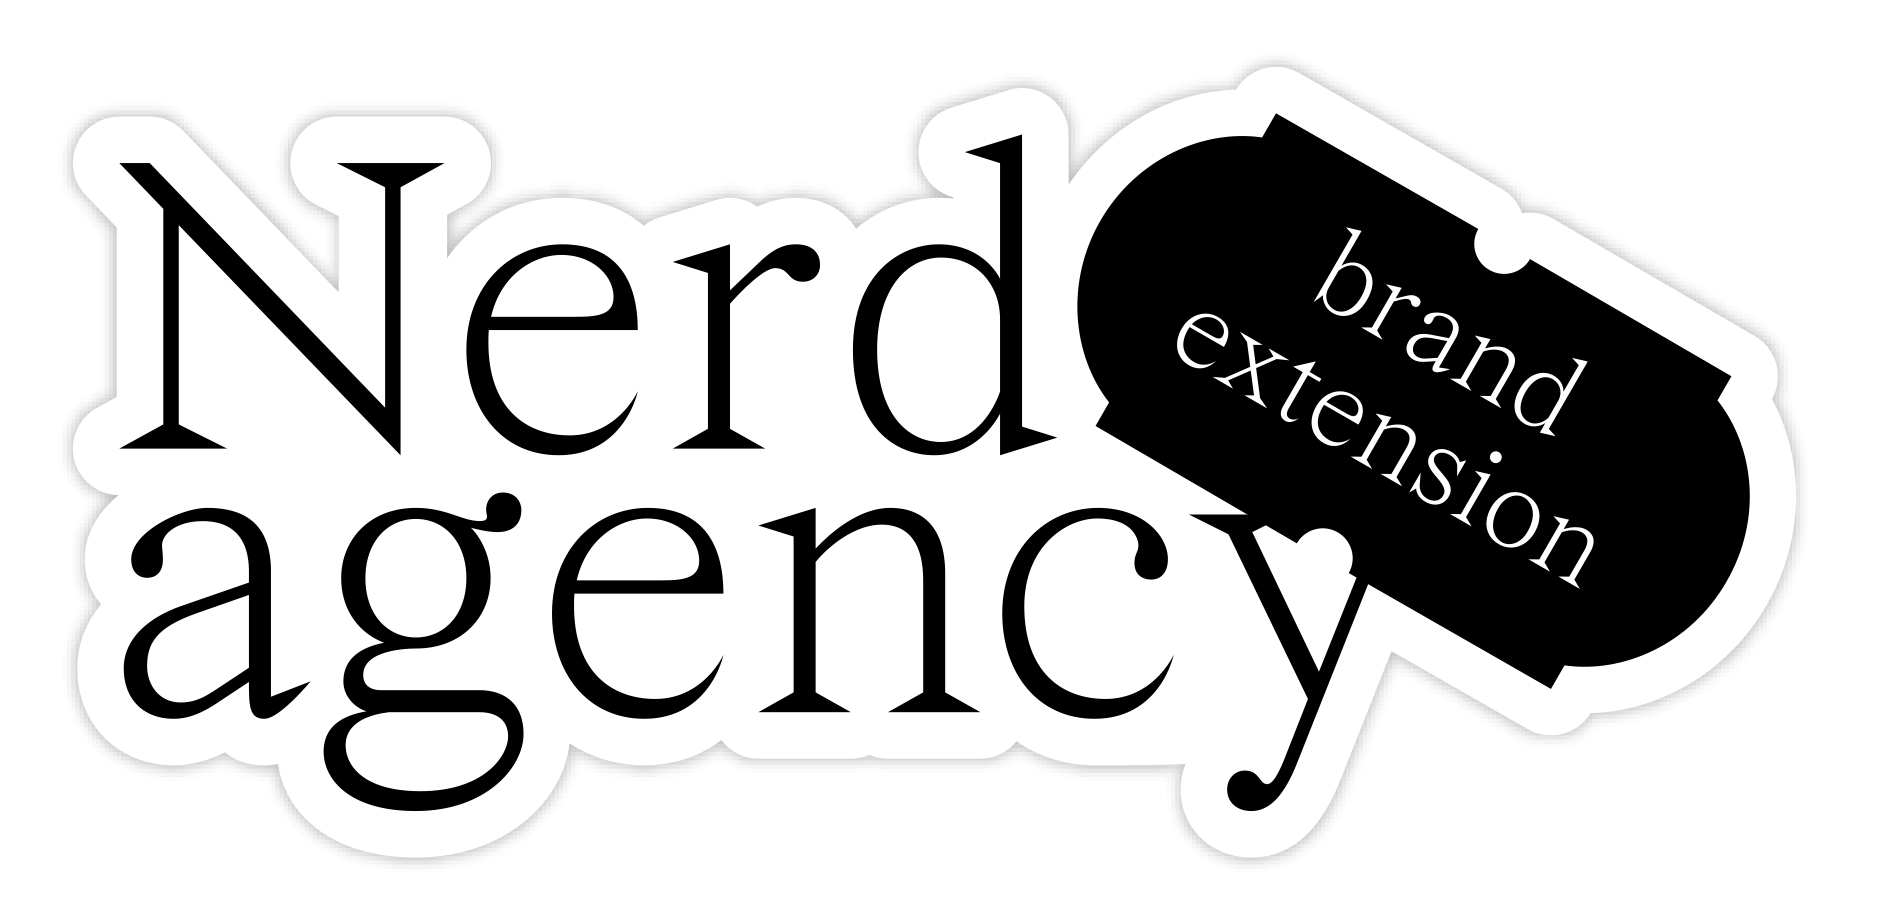 Nerd Agency